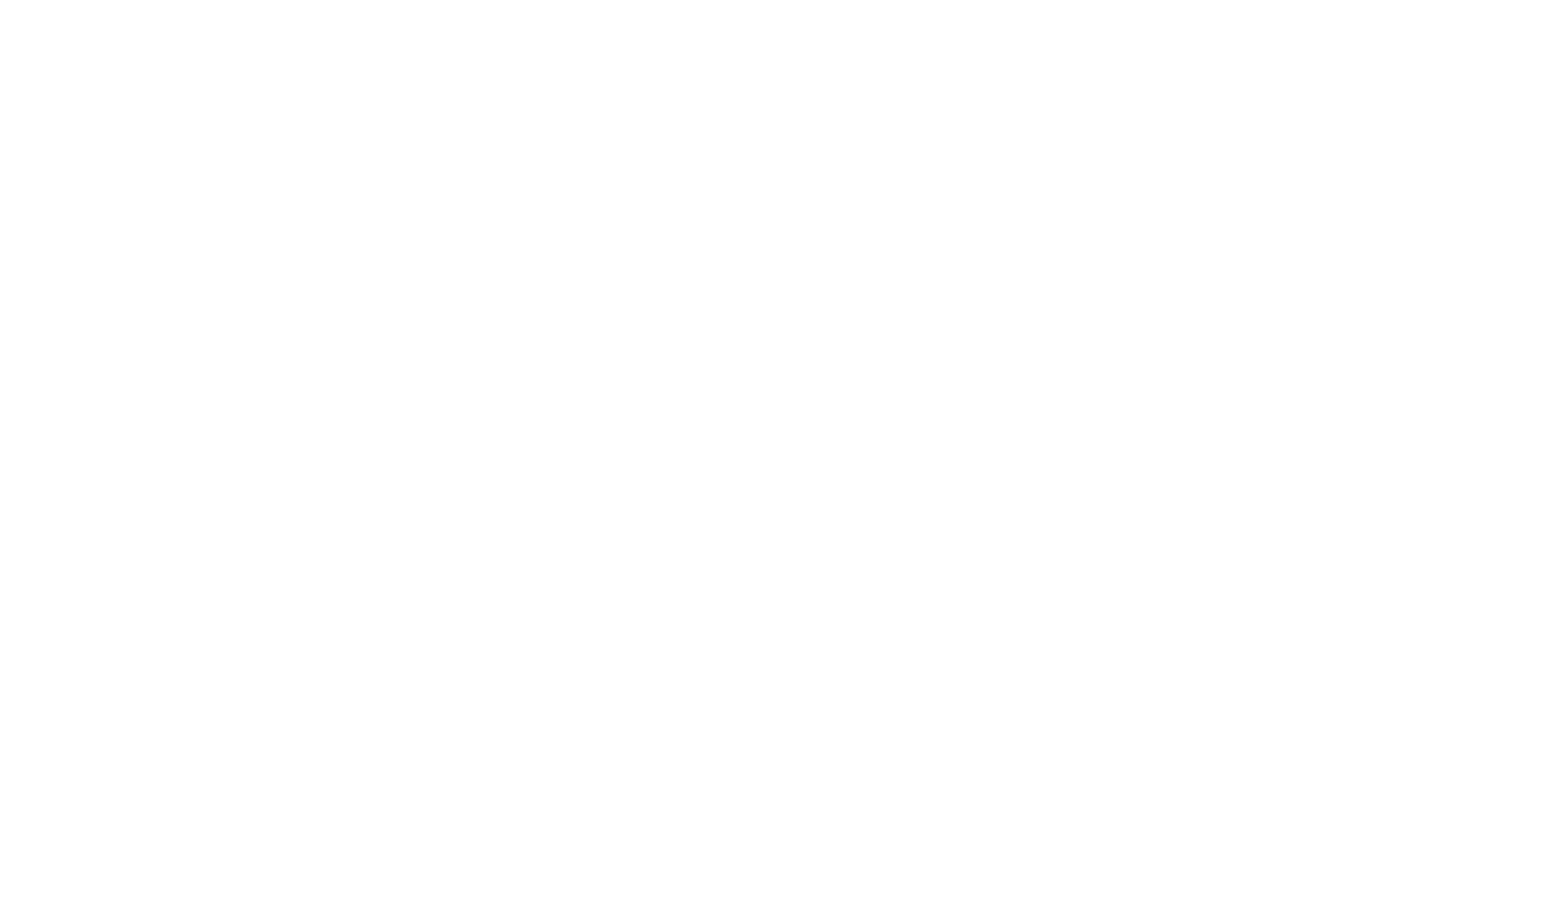 BUREAU BOND